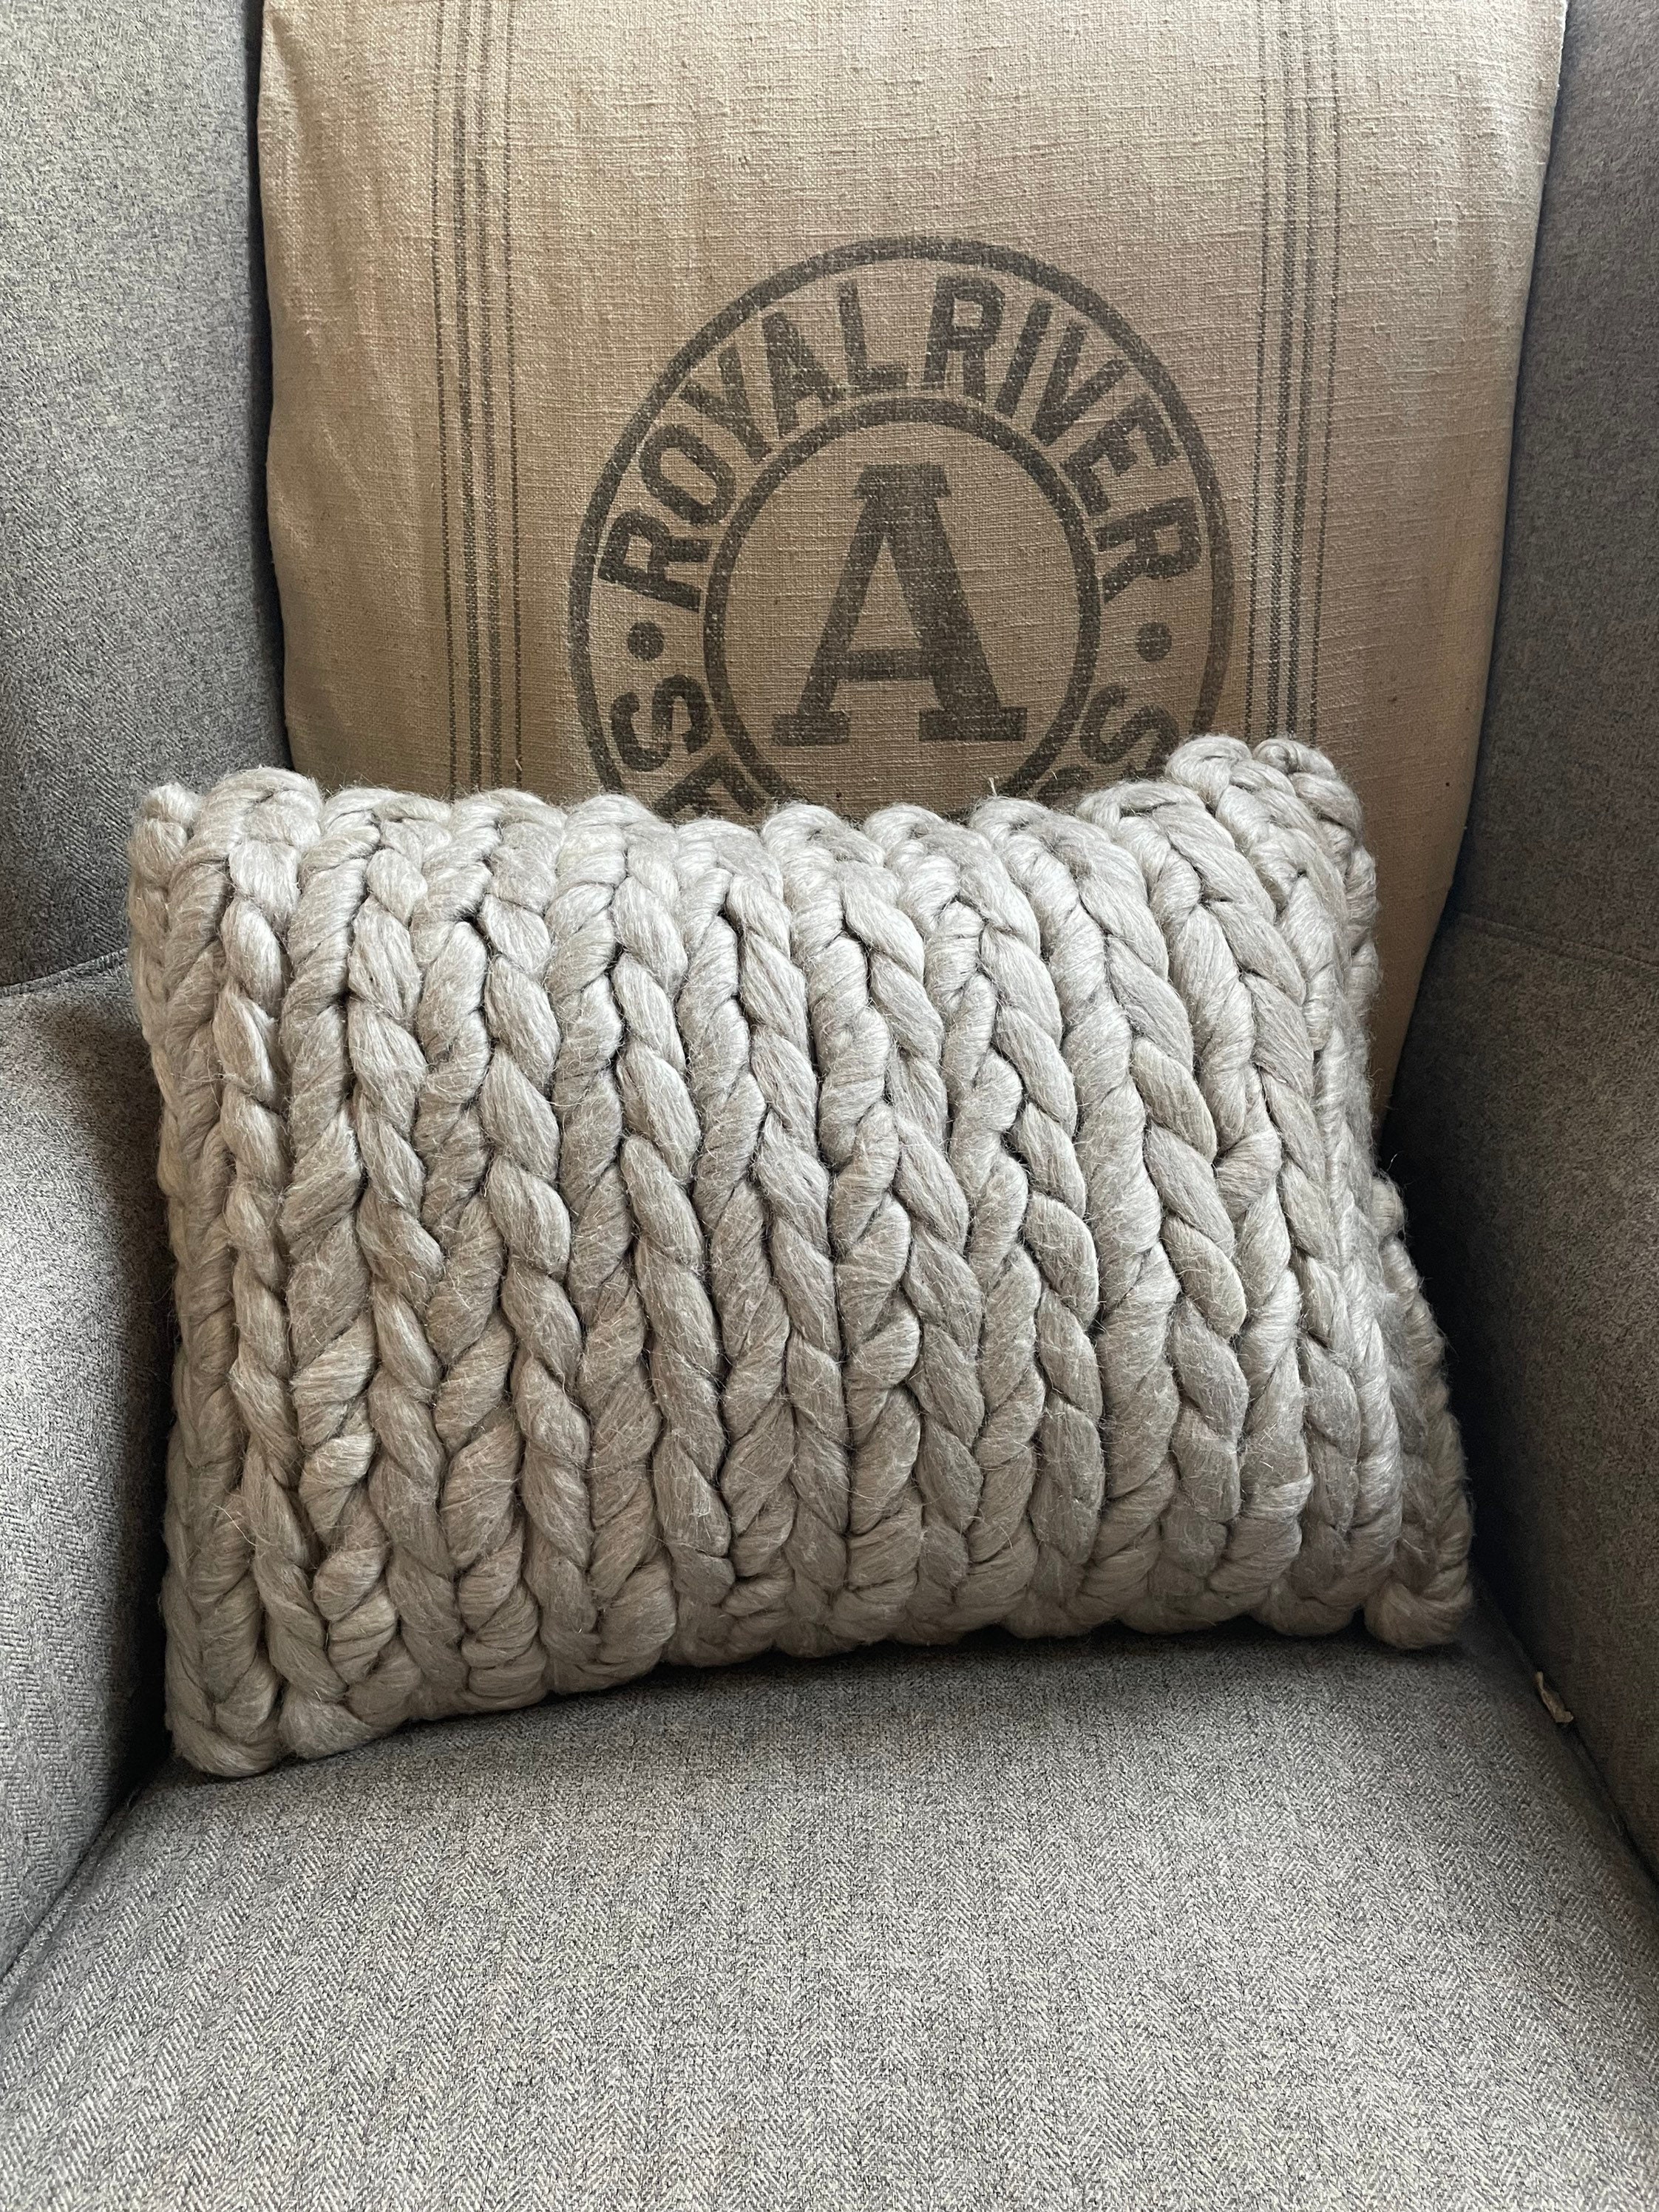 Azulina Home - Grey Chunky Wool Lumbar Pillow